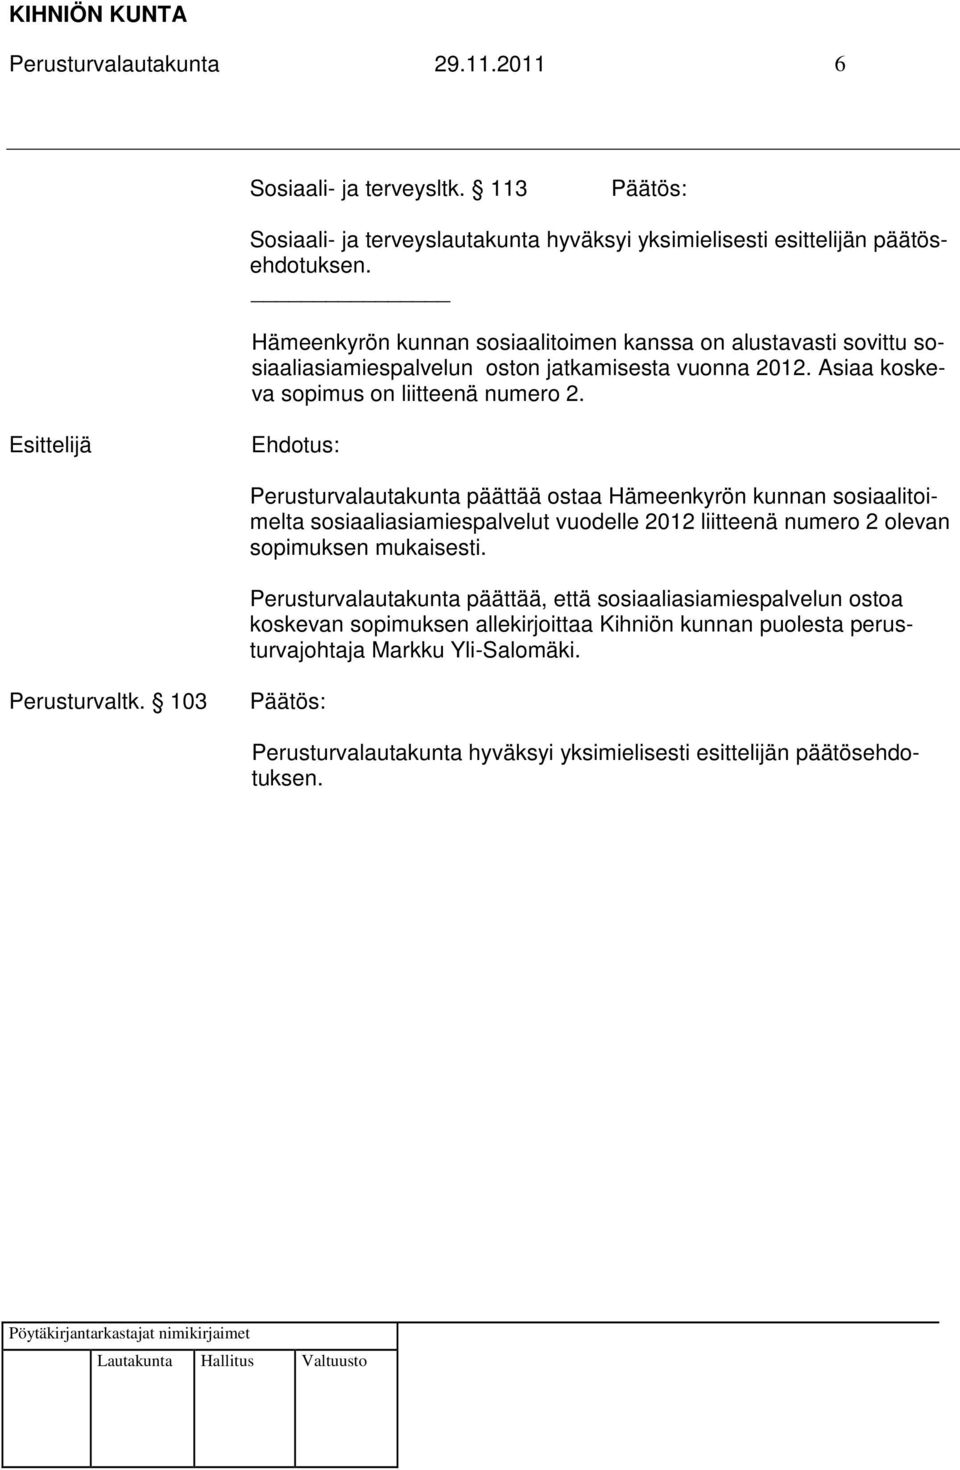 Perusturvalautakunta päättää ostaa Hämeenkyrön kunnan sosiaalitoimelta sosiaaliasiamiespalvelut vuodelle 2012 liitteenä numero 2 olevan sopimuksen mukaisesti.